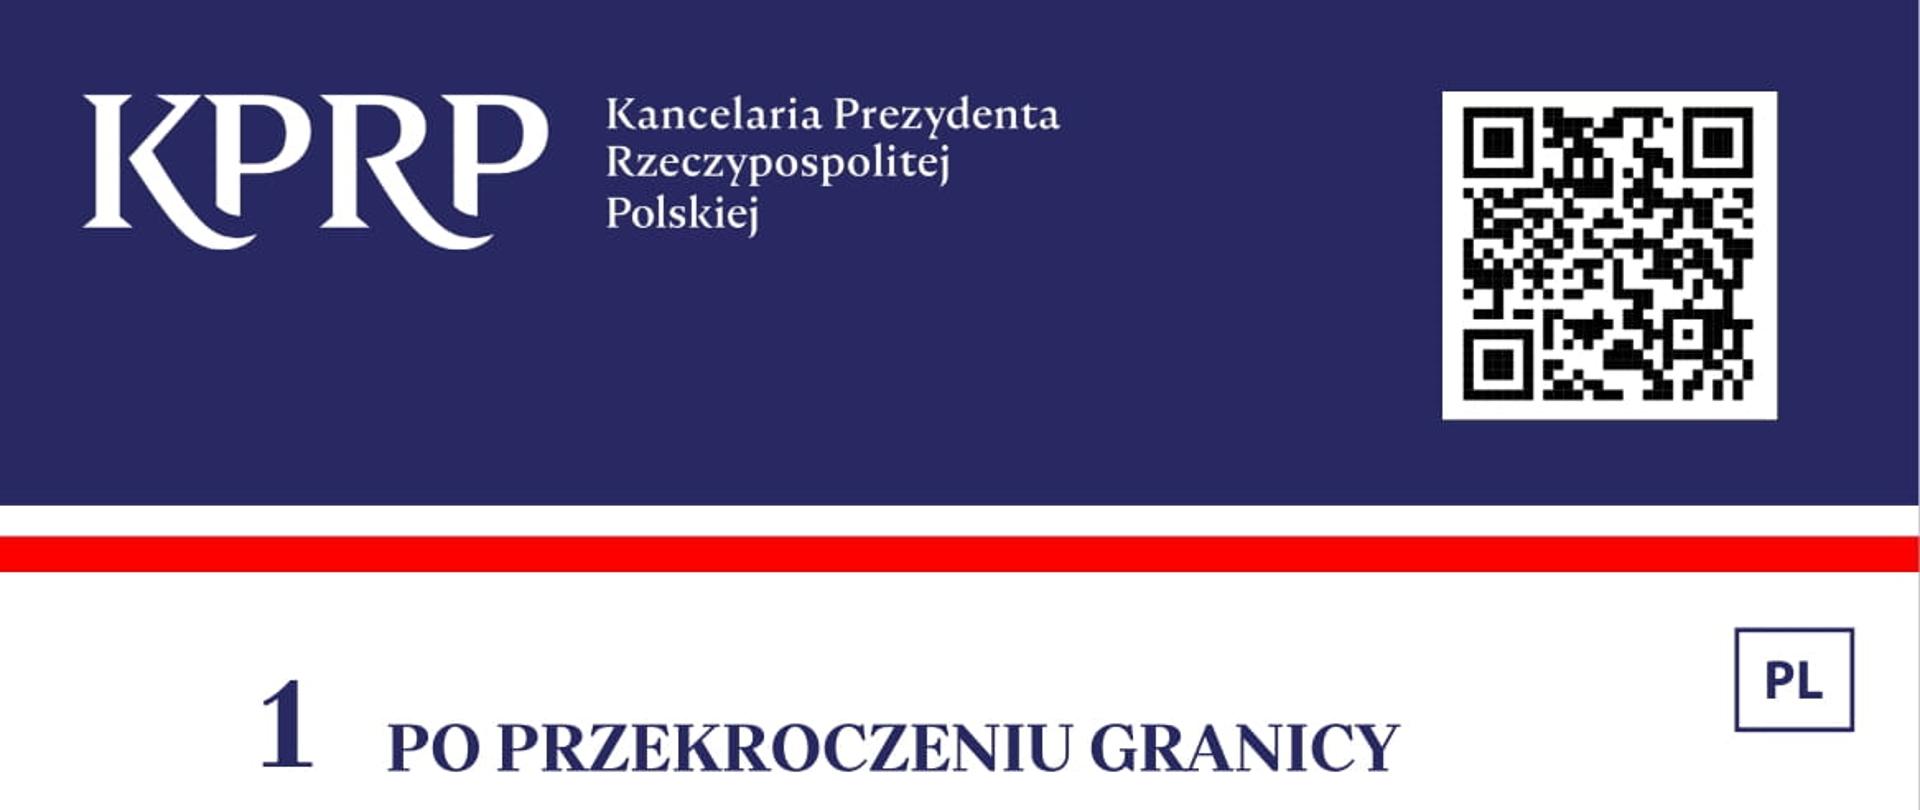 Ulotka informacyjna w języku polskim